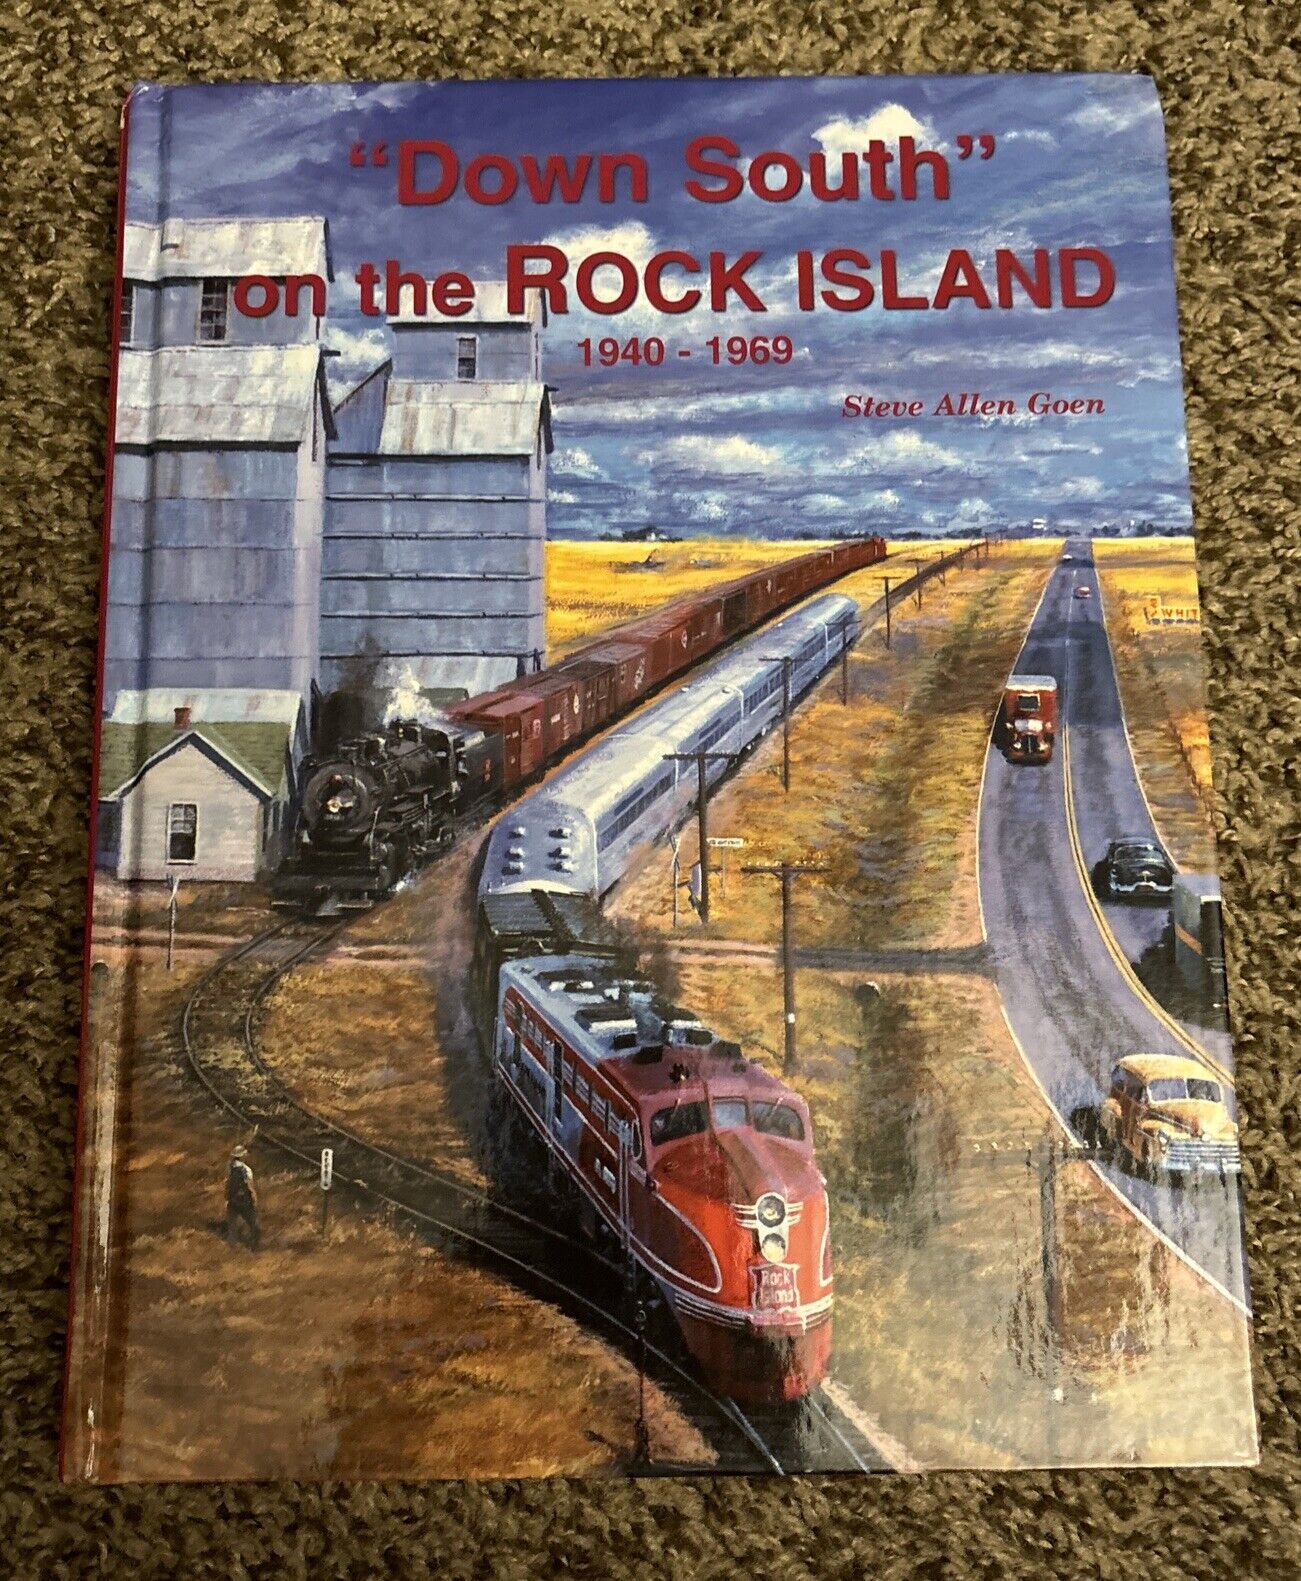 Down South On The Rock Island 1940-1969 Hardcover By Steve Allen Goen, Train